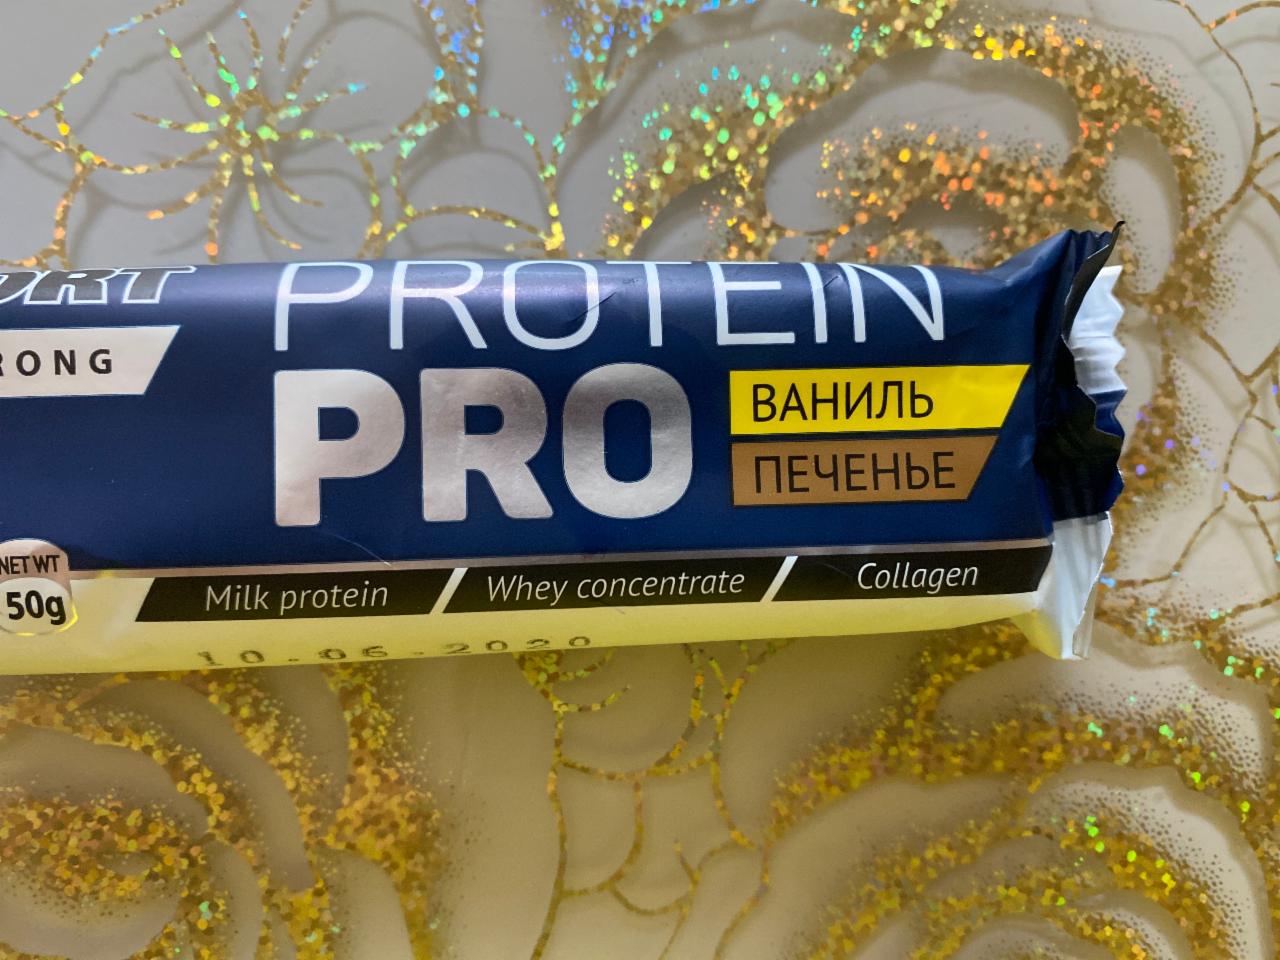 Фото - протеиновый батончик в глазури со вкусом ваниль печенье Protein Pro Effort